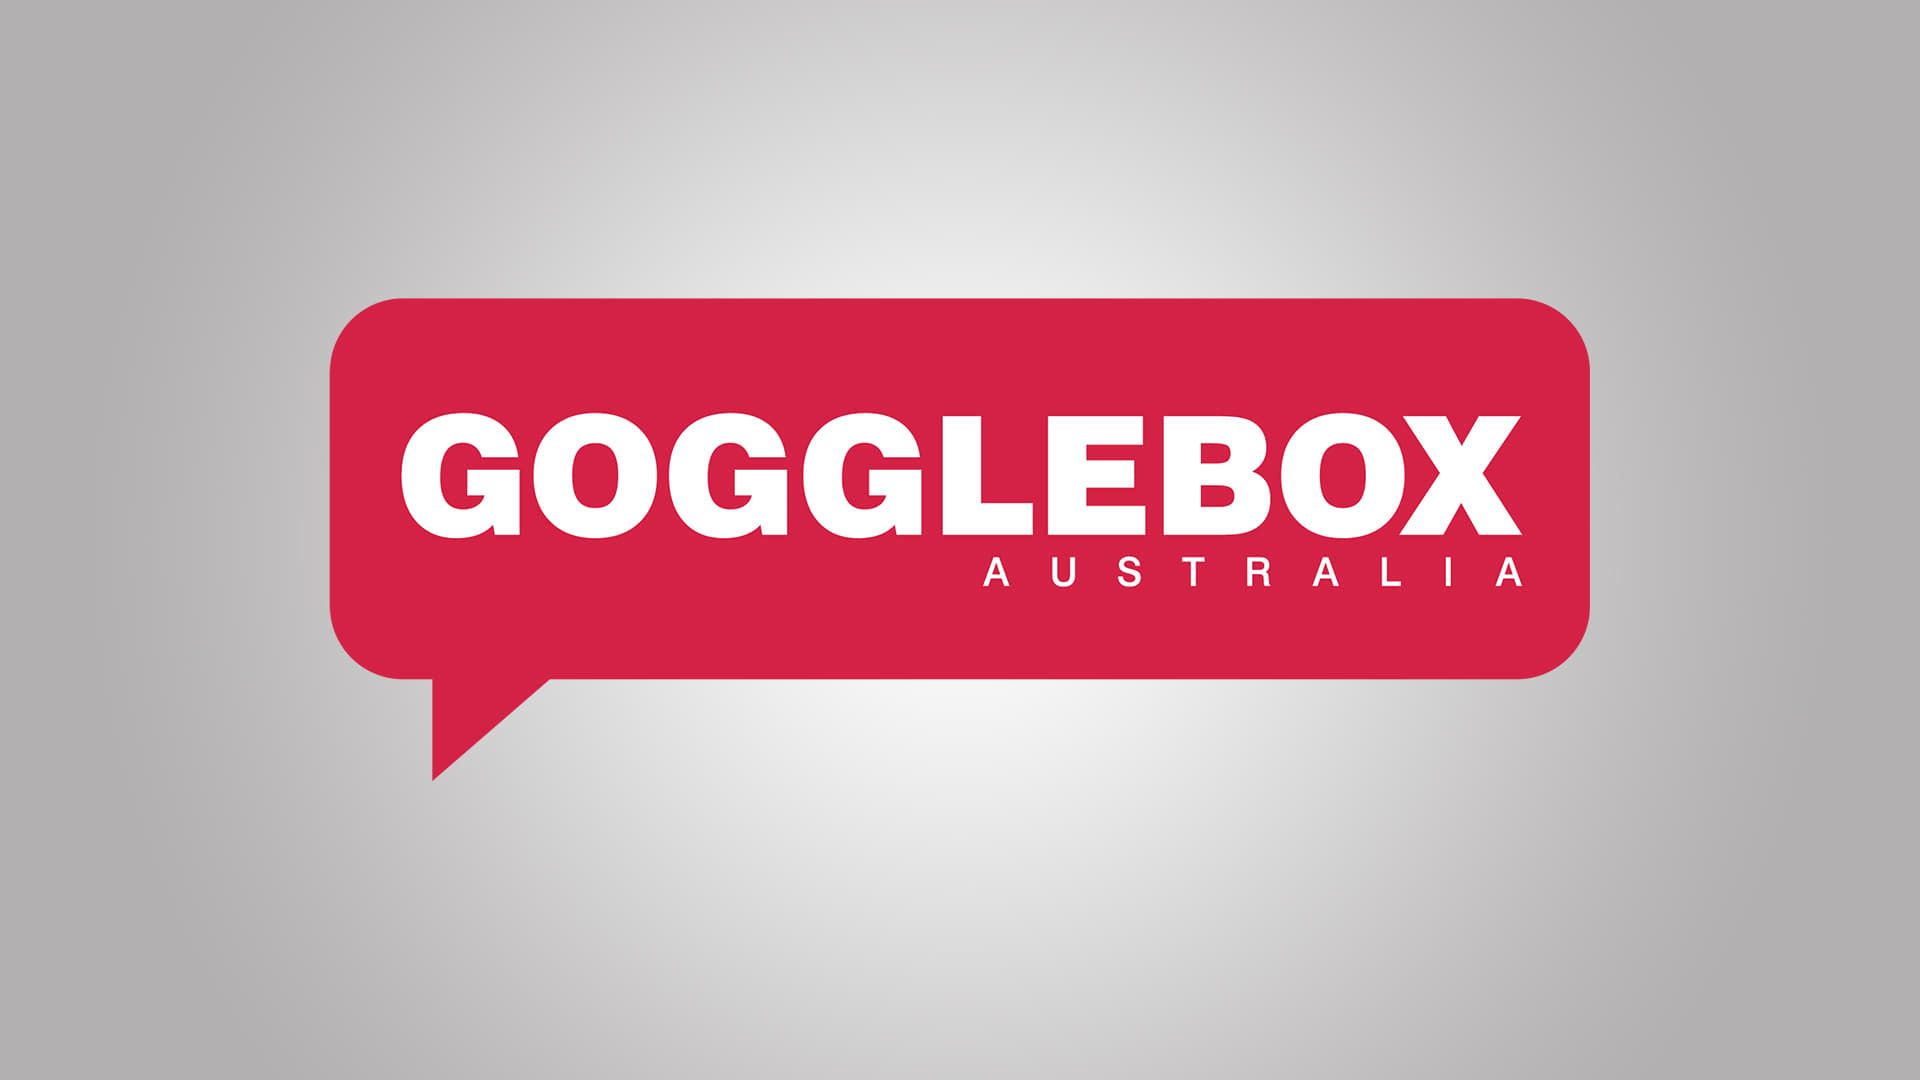 Gogglebox Australia background